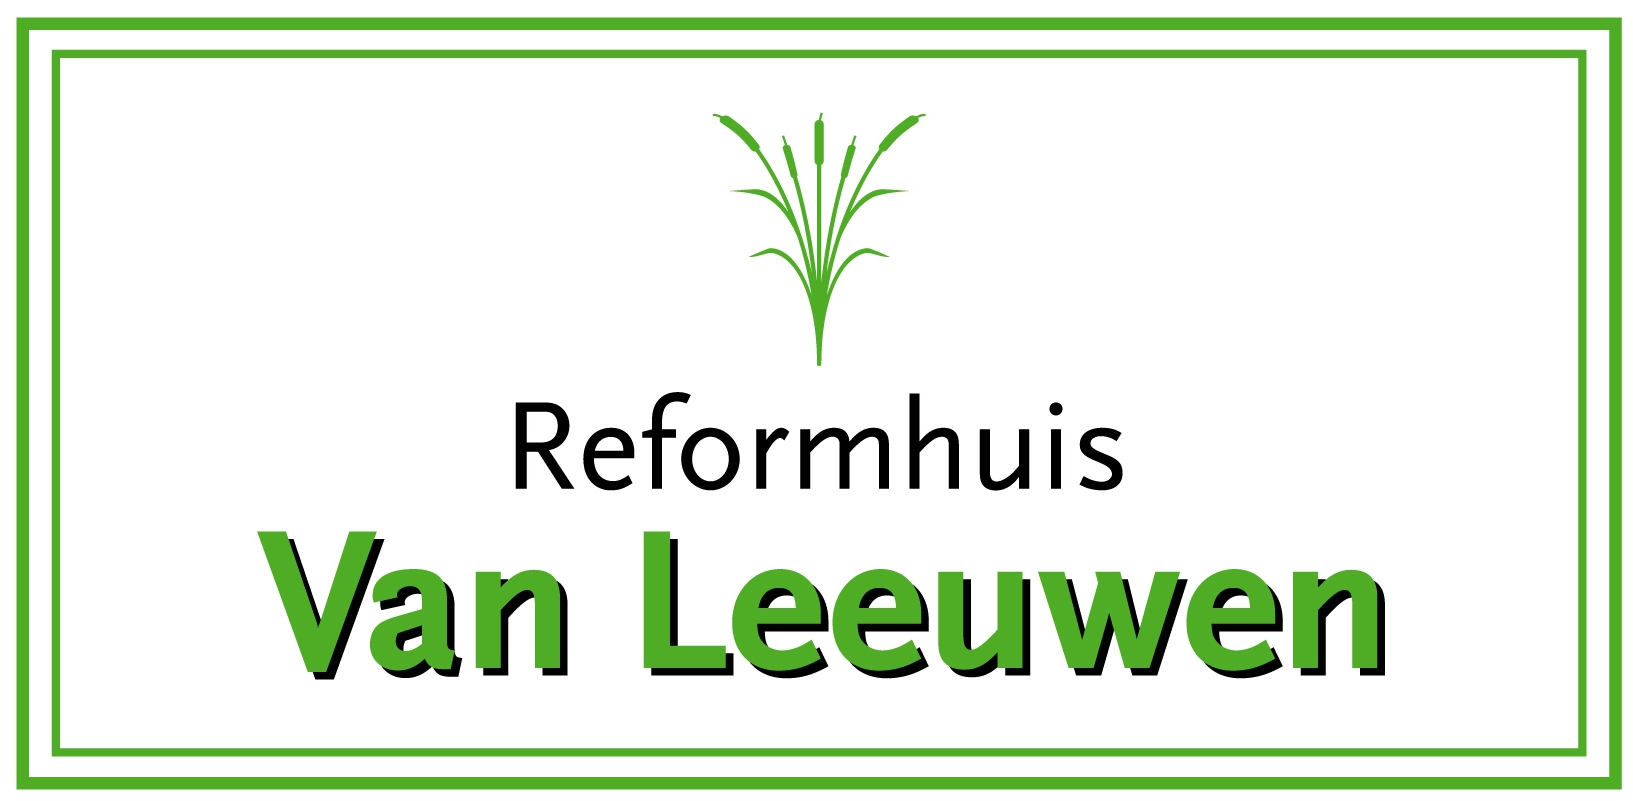 Natuurvoeding van Leeuwen, sinds 1977 dé reformwinkel in Den Haag.